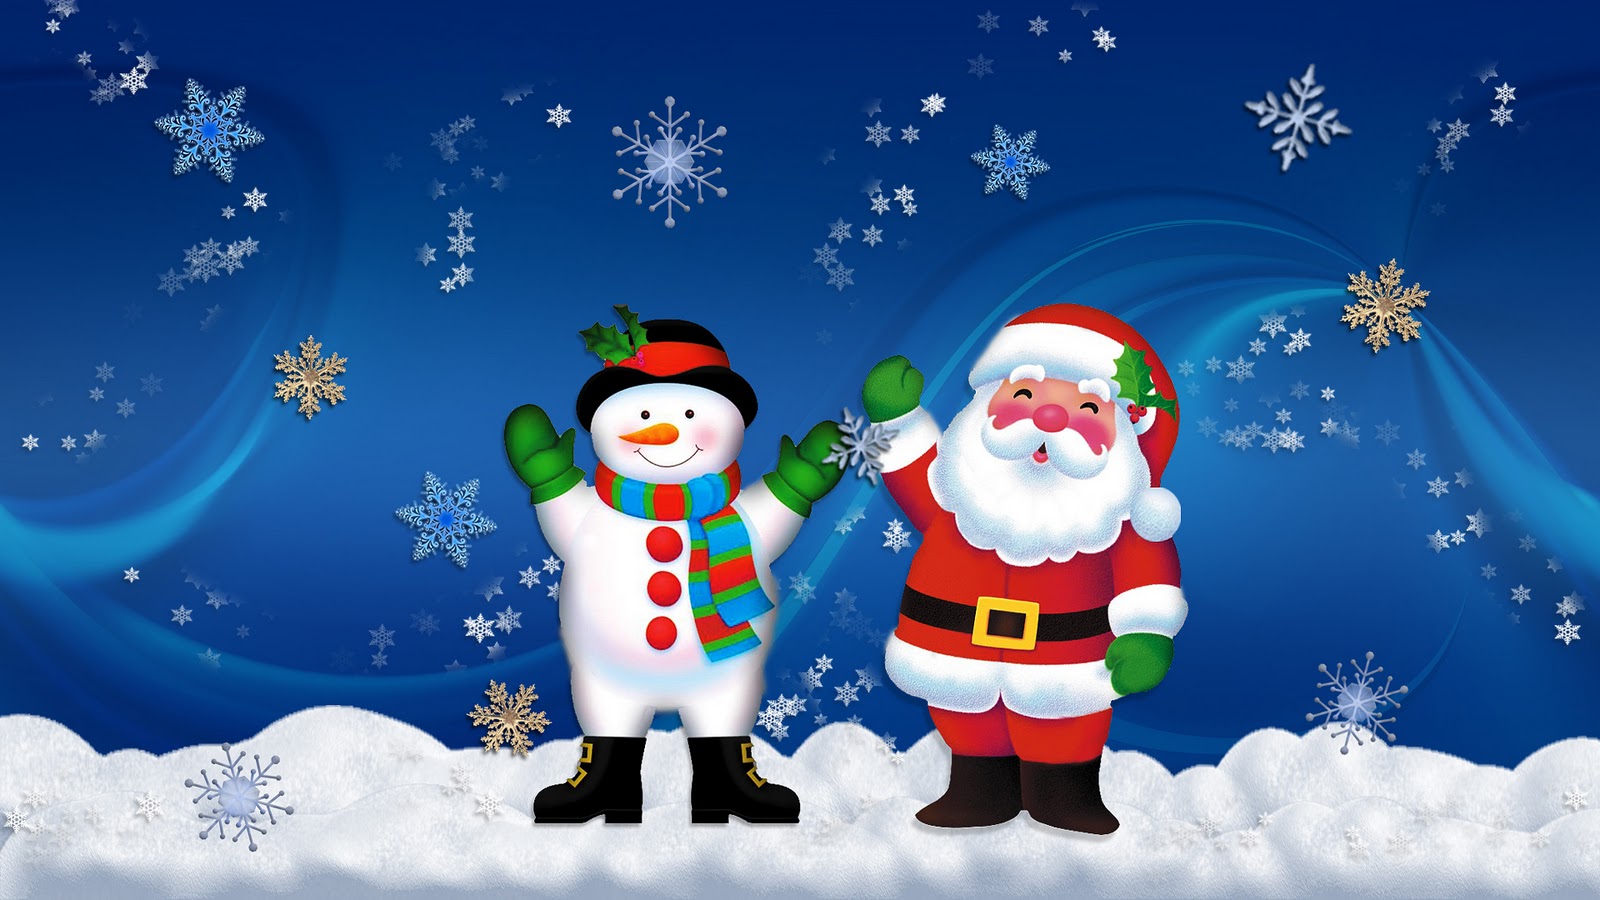 산타 벽지,산타 클로스,크리스마스,소설 속의 인물,겨울,하늘